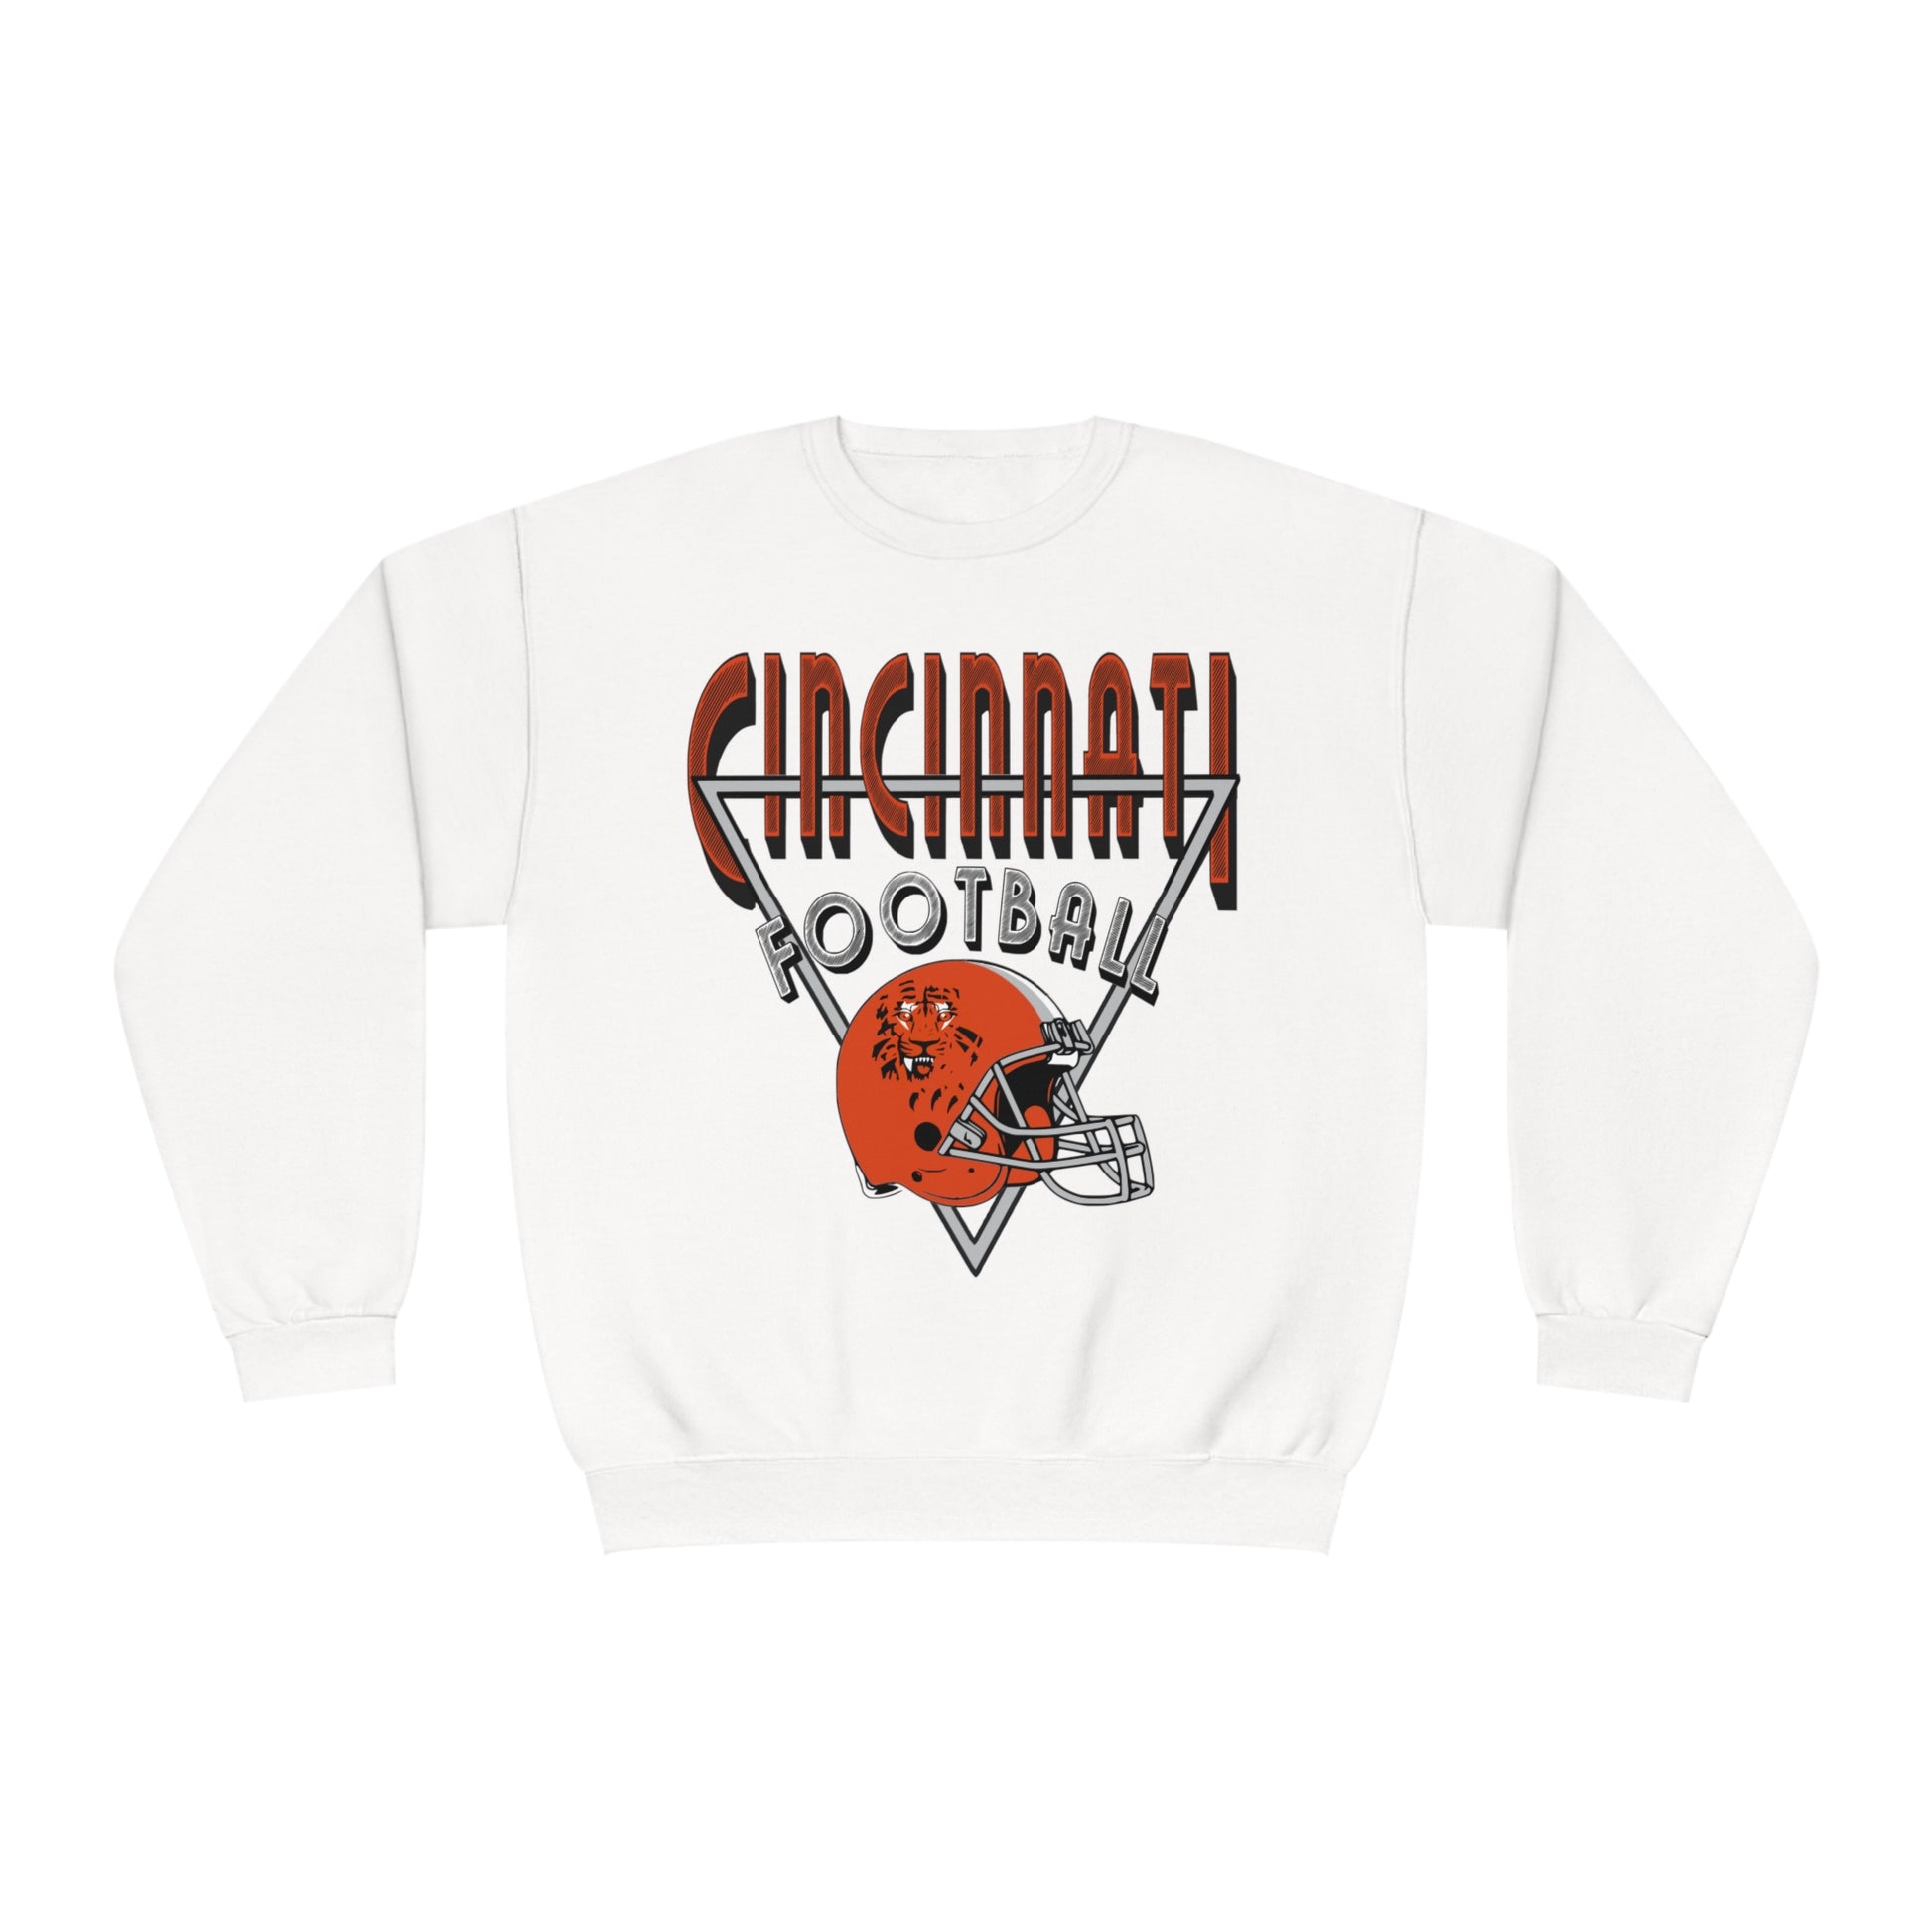 Vintage Cincinnati Bengals Crewneck Sweatshirt - 90's NFL Football Hoodie - Men's & Women's 90's Oversized White